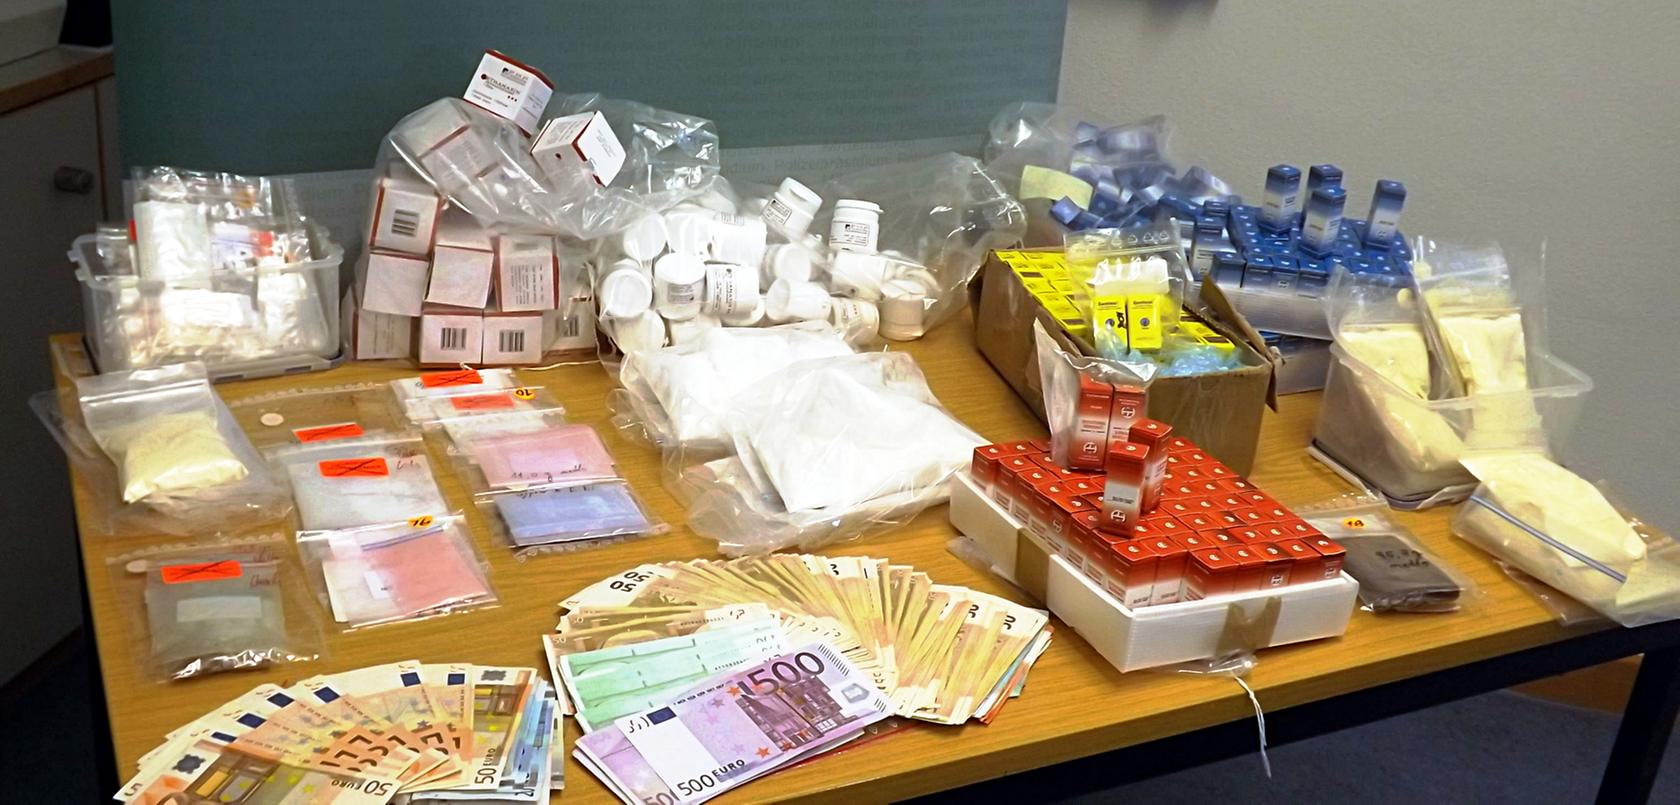 Die Polizei präsentierte einen Teil der beschlagnahmten Ware. Hier: verschiedene beschlagnahmte Drogen-Packungen, Päckchen und Geldscheine auf einem Tisch